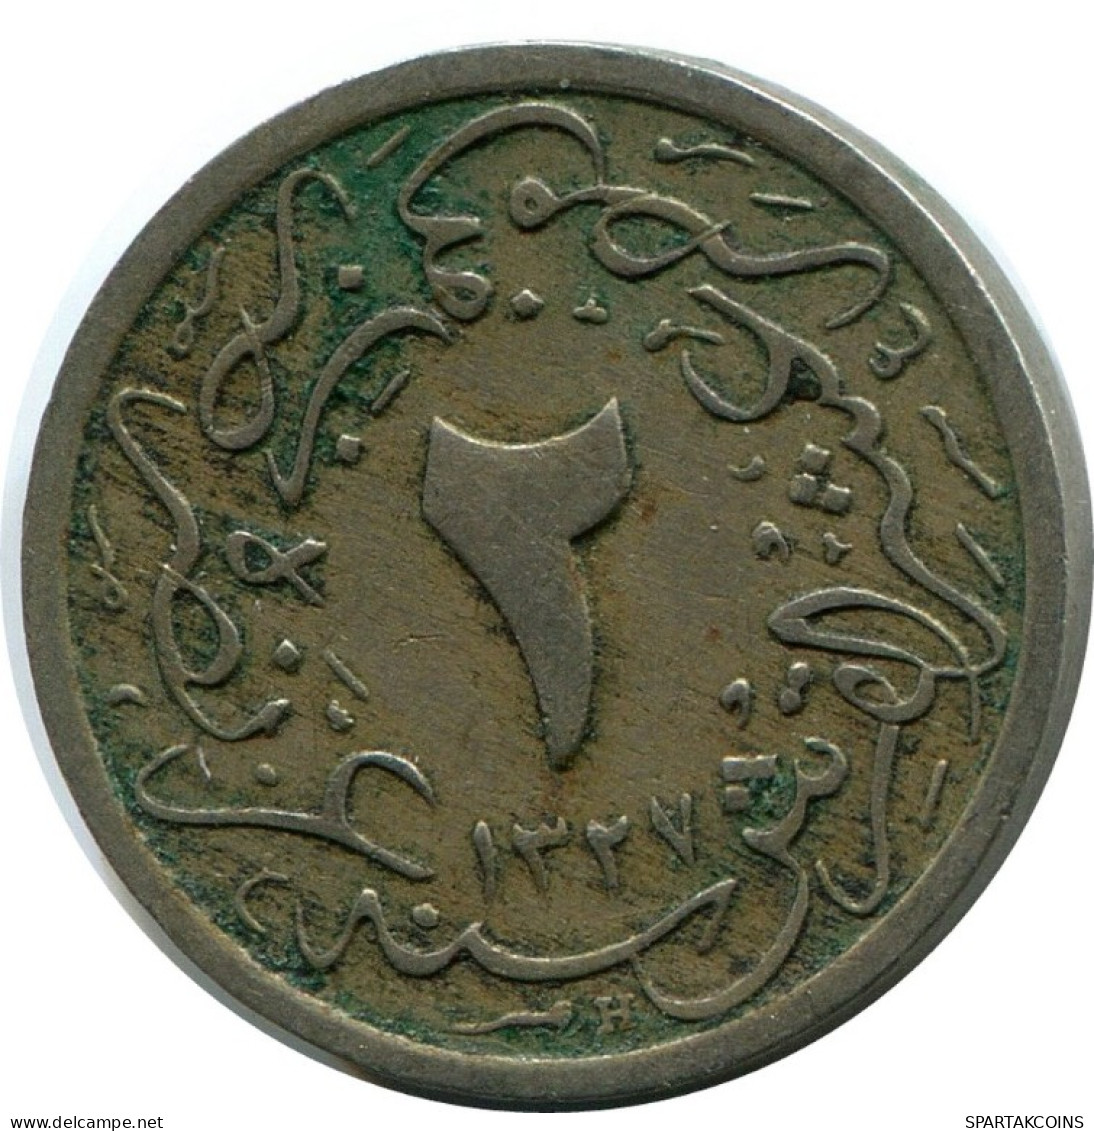 1/20 QIRSH 1910 EGYPT Islamic Coin #AK314.U.A - Aegypten